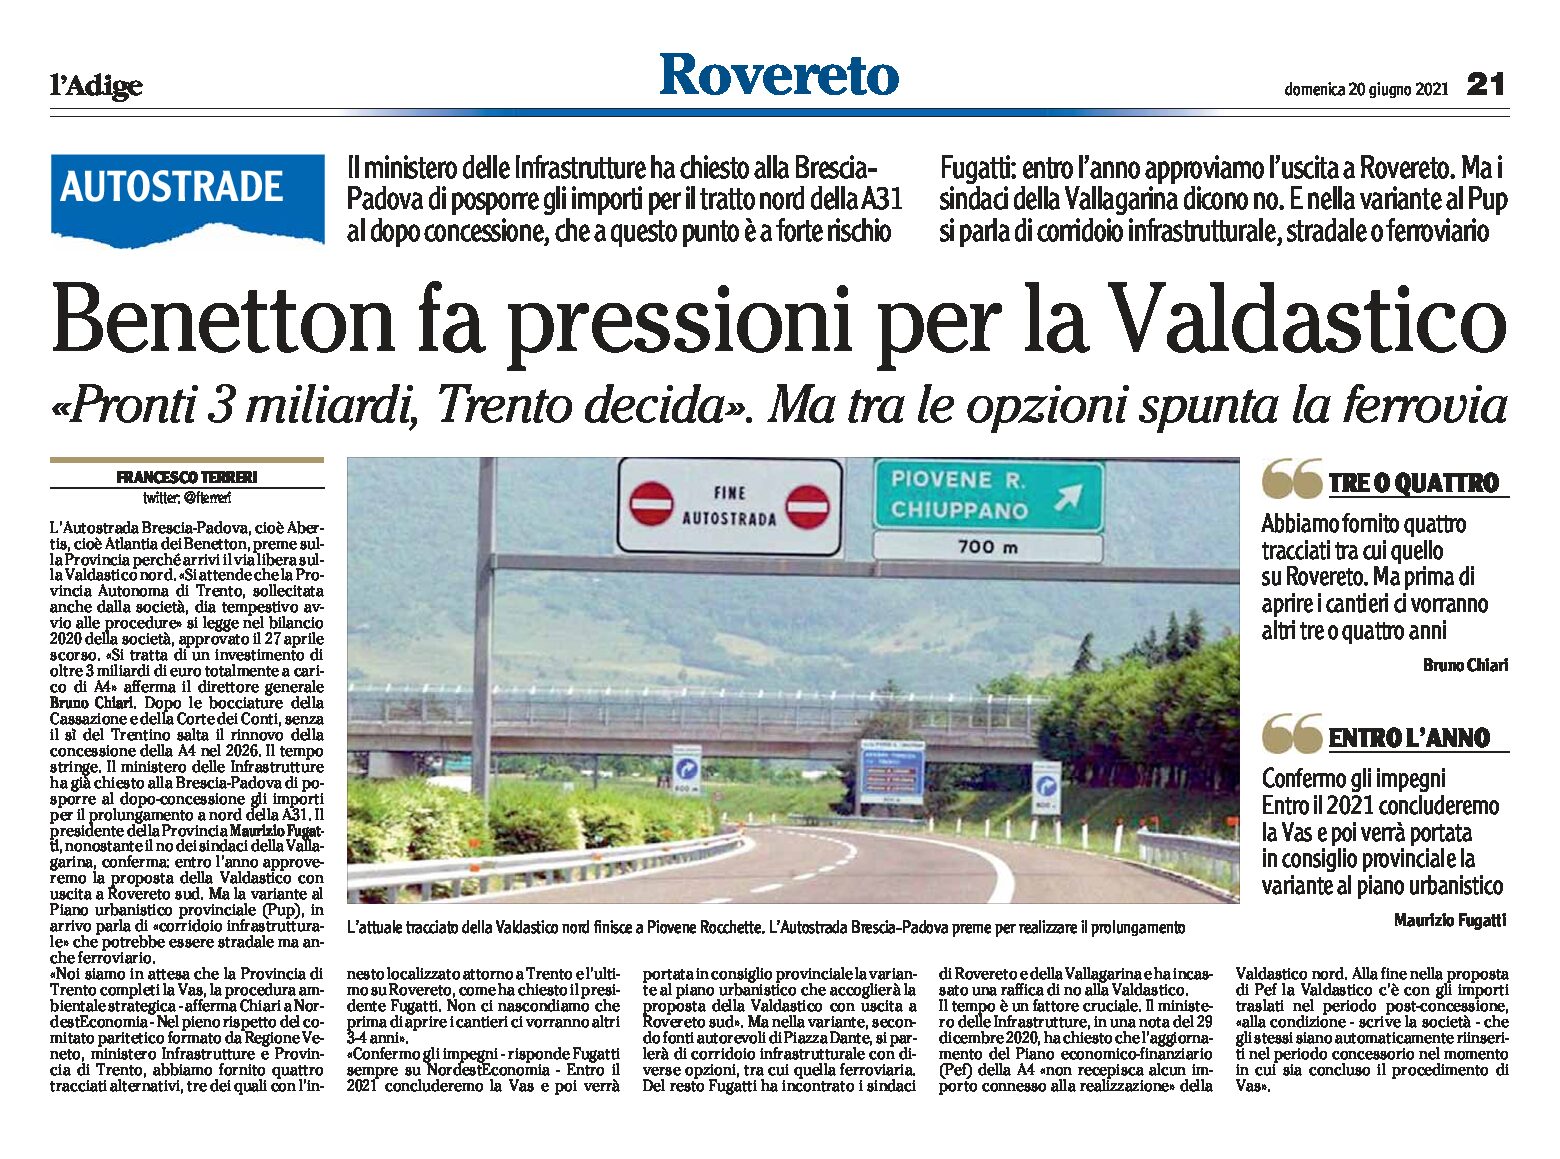 Autostrade: Benetton fa pressioni per la Valdastico